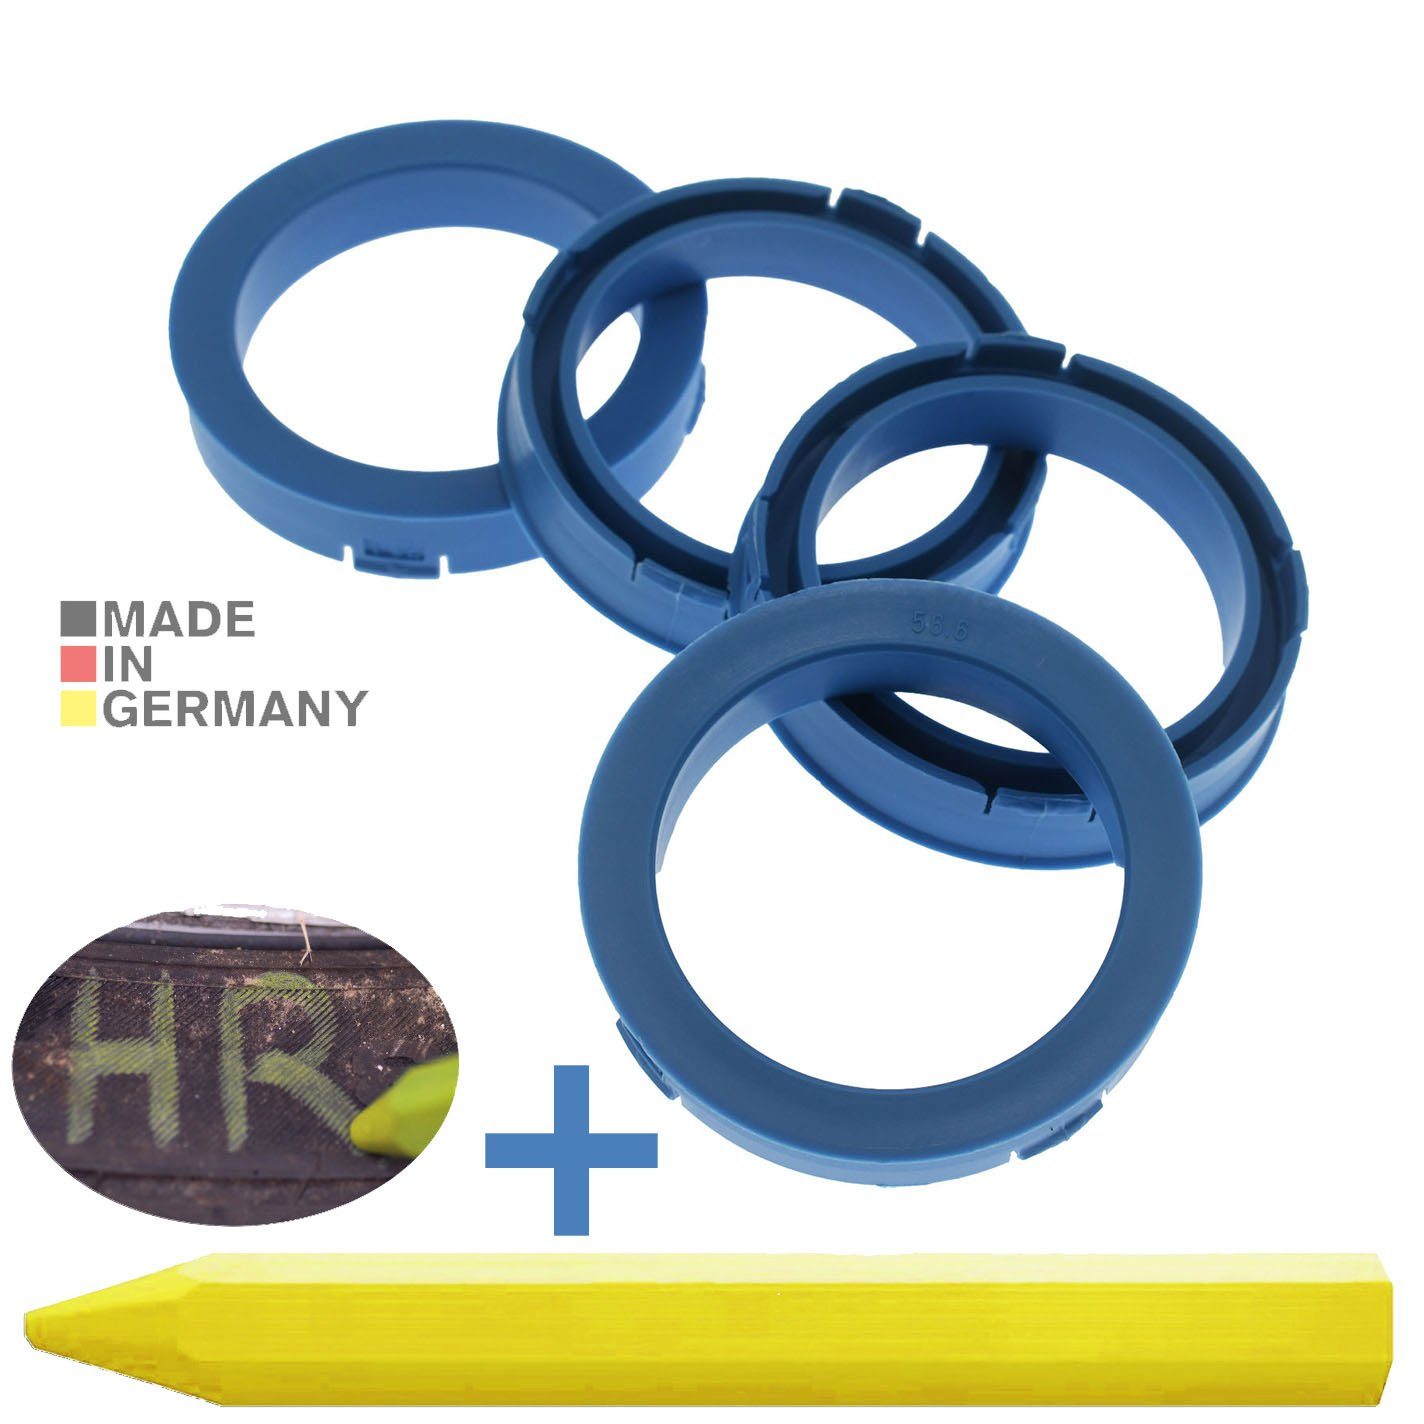 RKC Reifenstift 4X Zentrierringe Hellblau Felgen Ringe + 1x Reifen Kreide Fett Stift, Maße: 73,1 x 56,6 mm | Reifenstifte